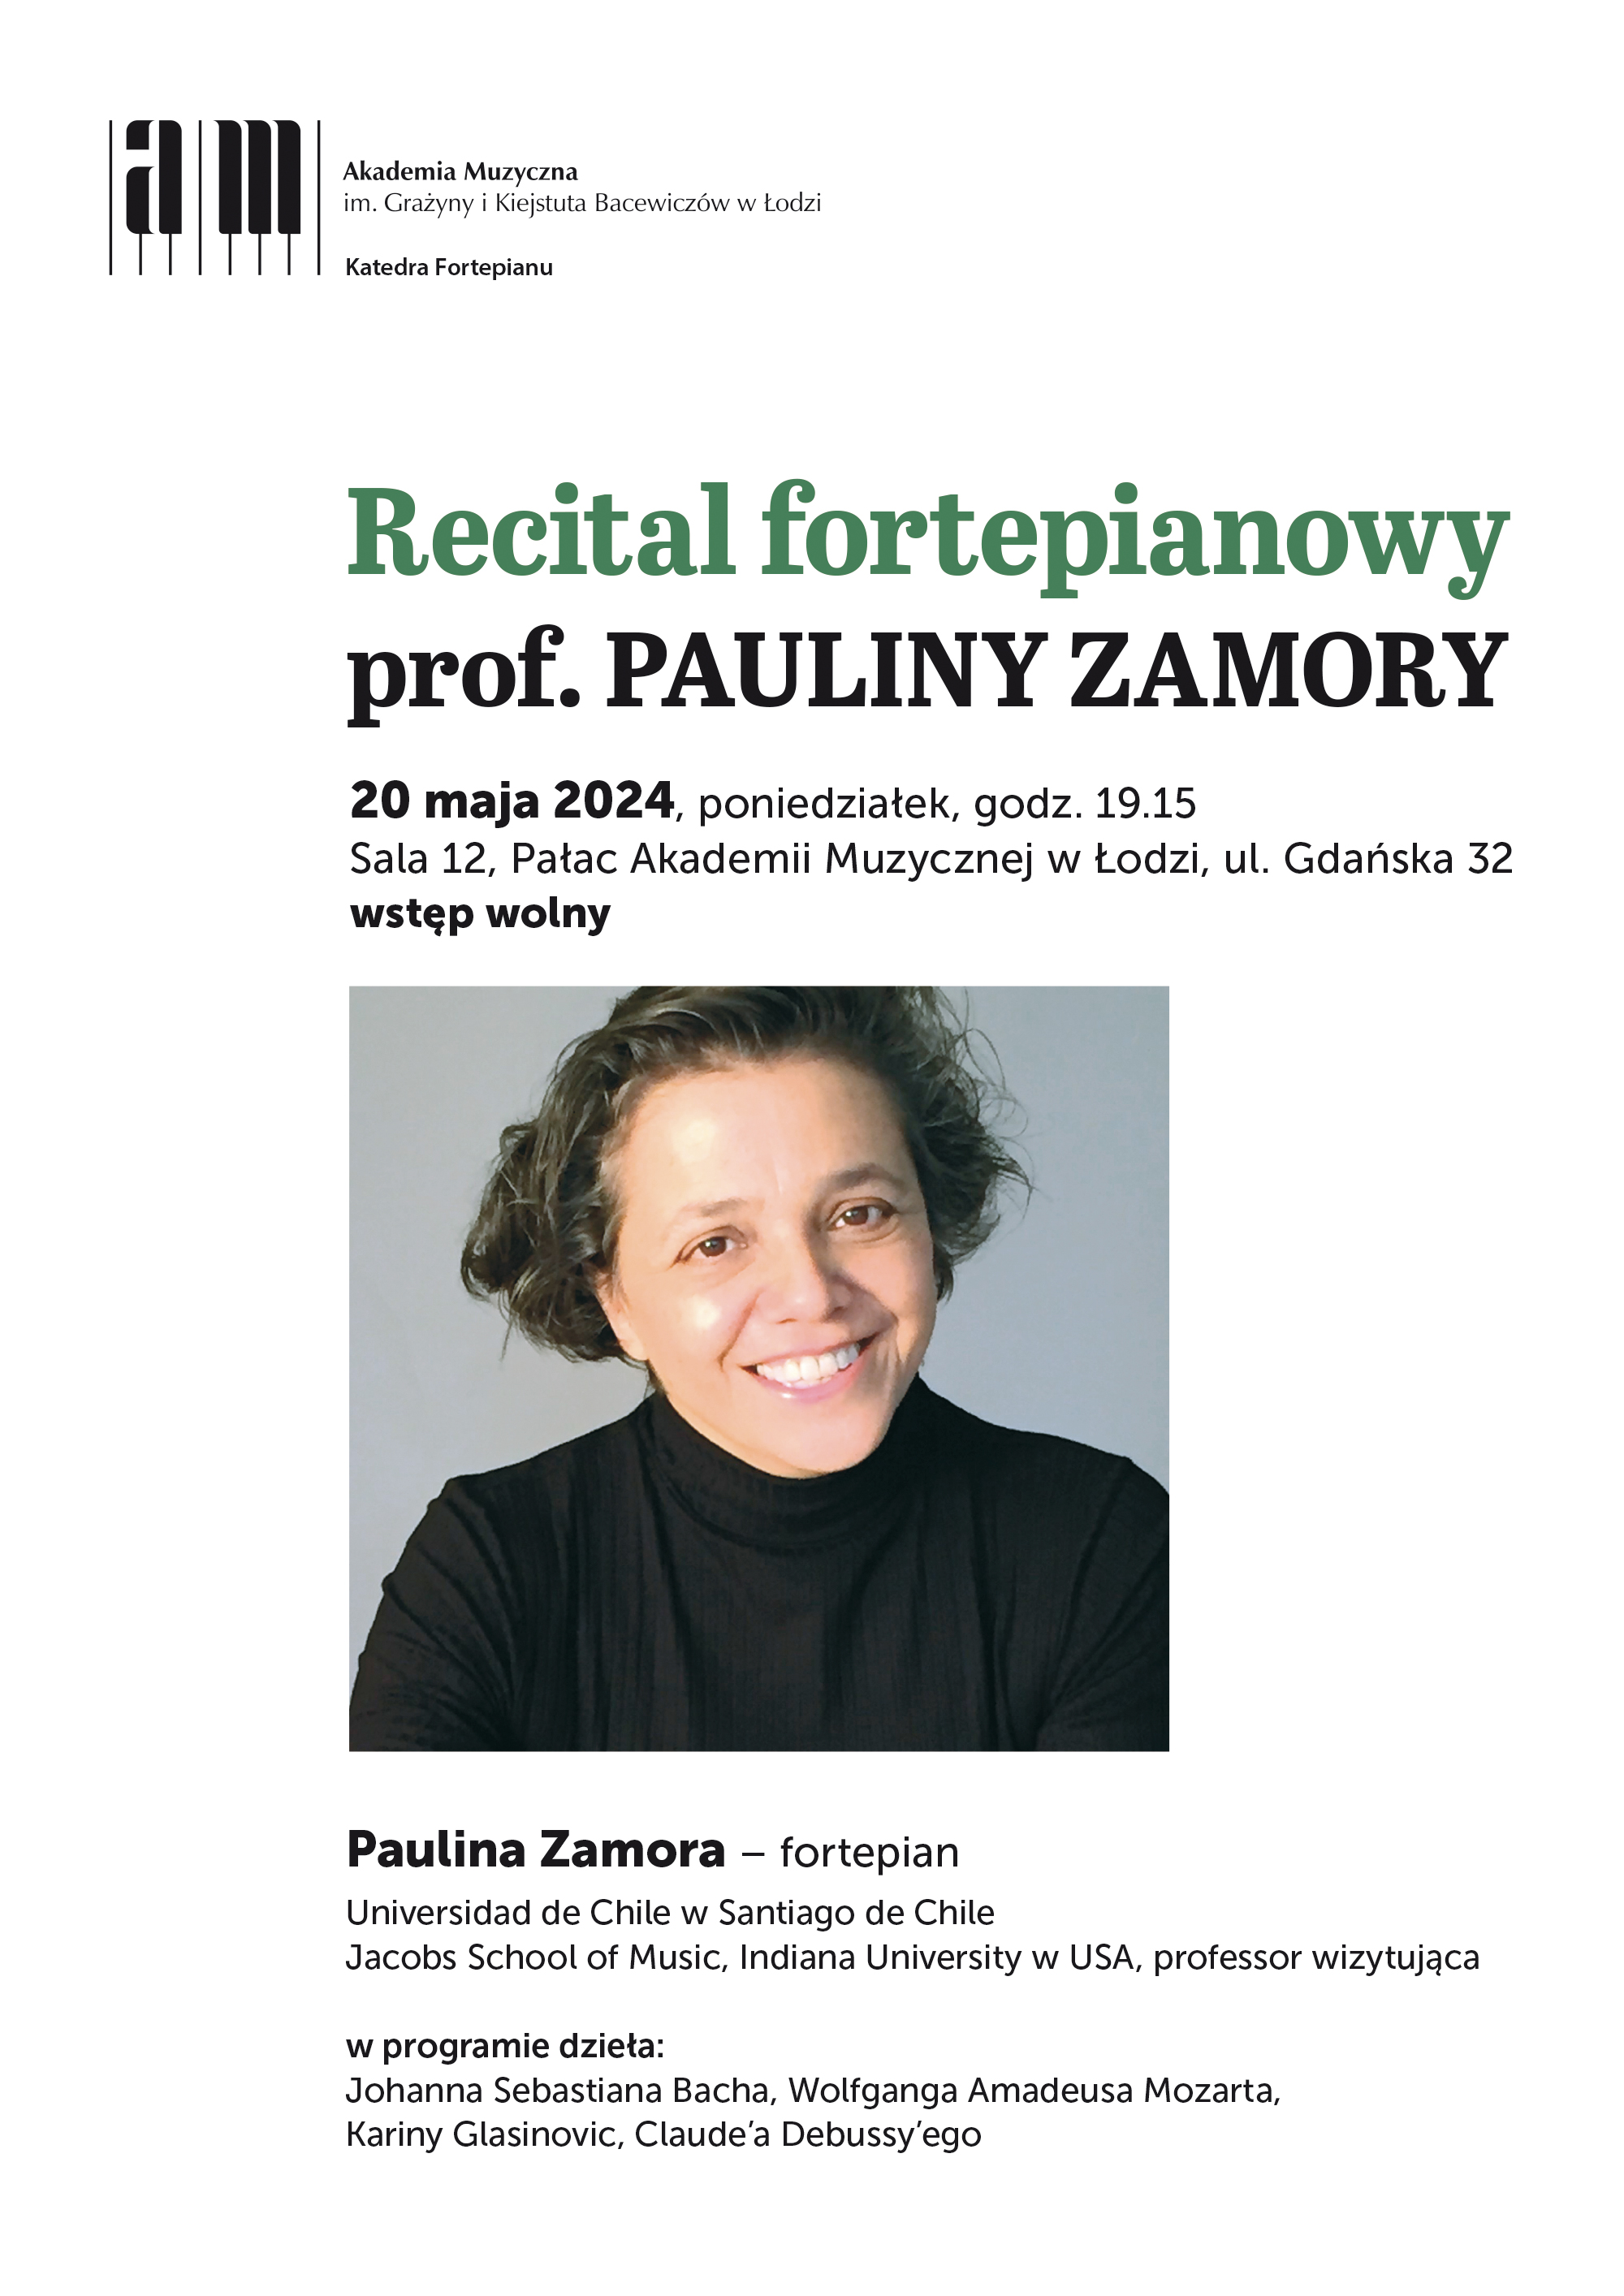 Recital fortepianowy prof. PAULINY ZAMORY